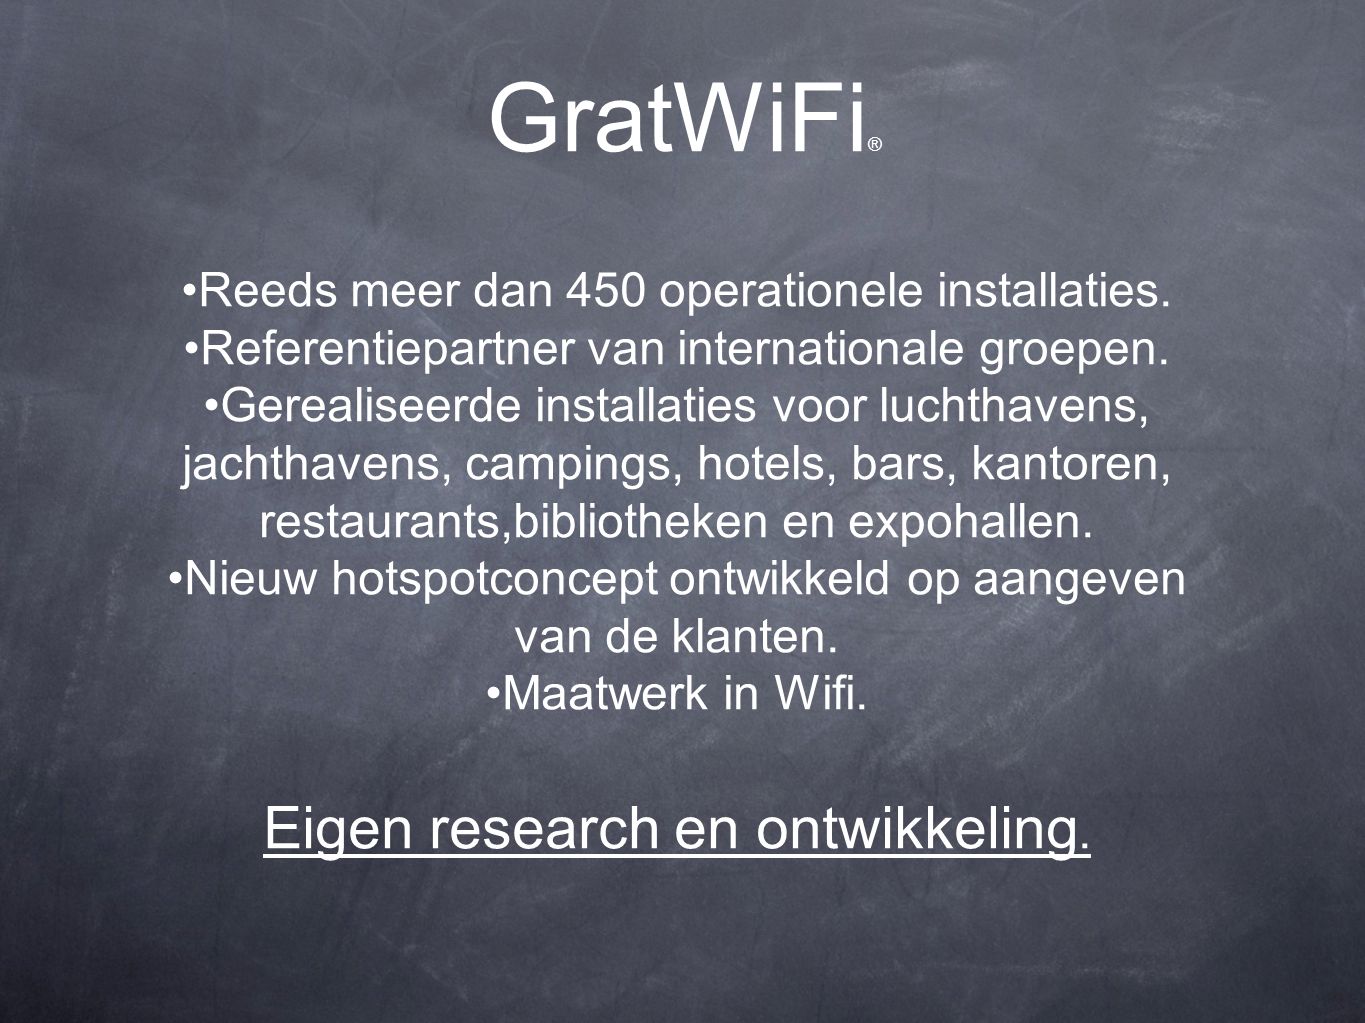 GratWiFi ® Reeds meer dan 450 operationele installaties.